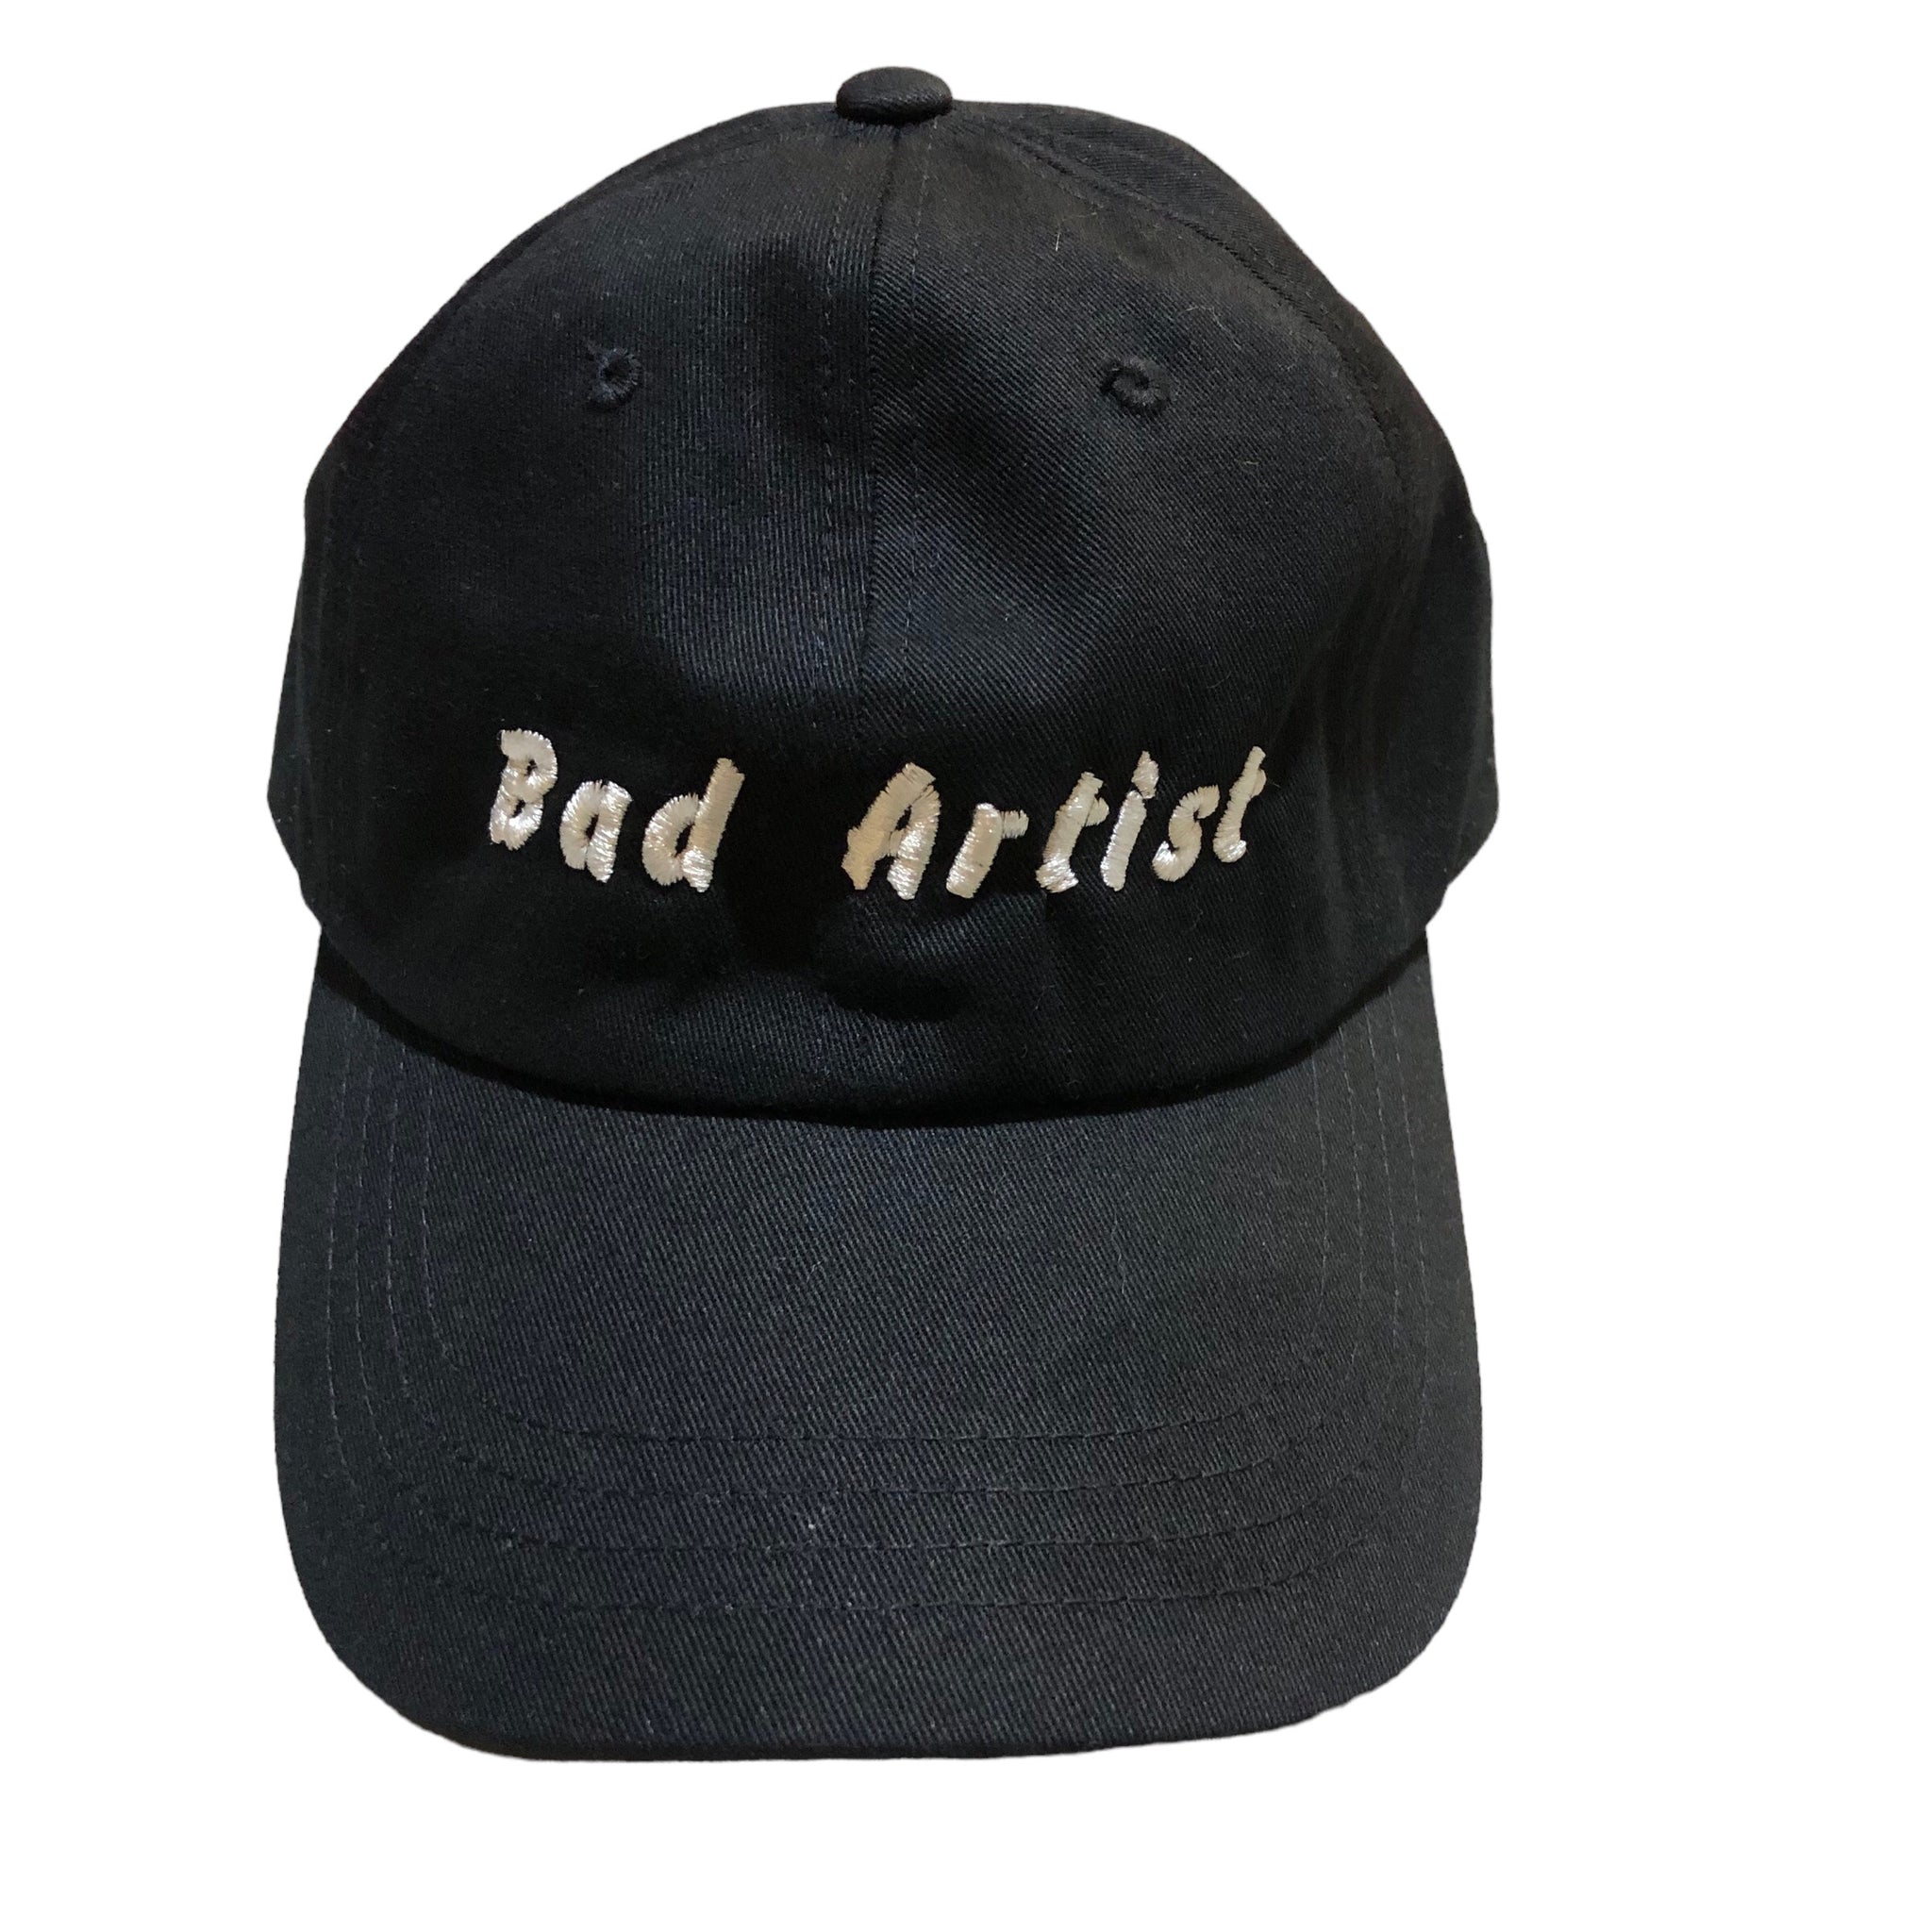 Bad artist Dad Hat by Dave Briker